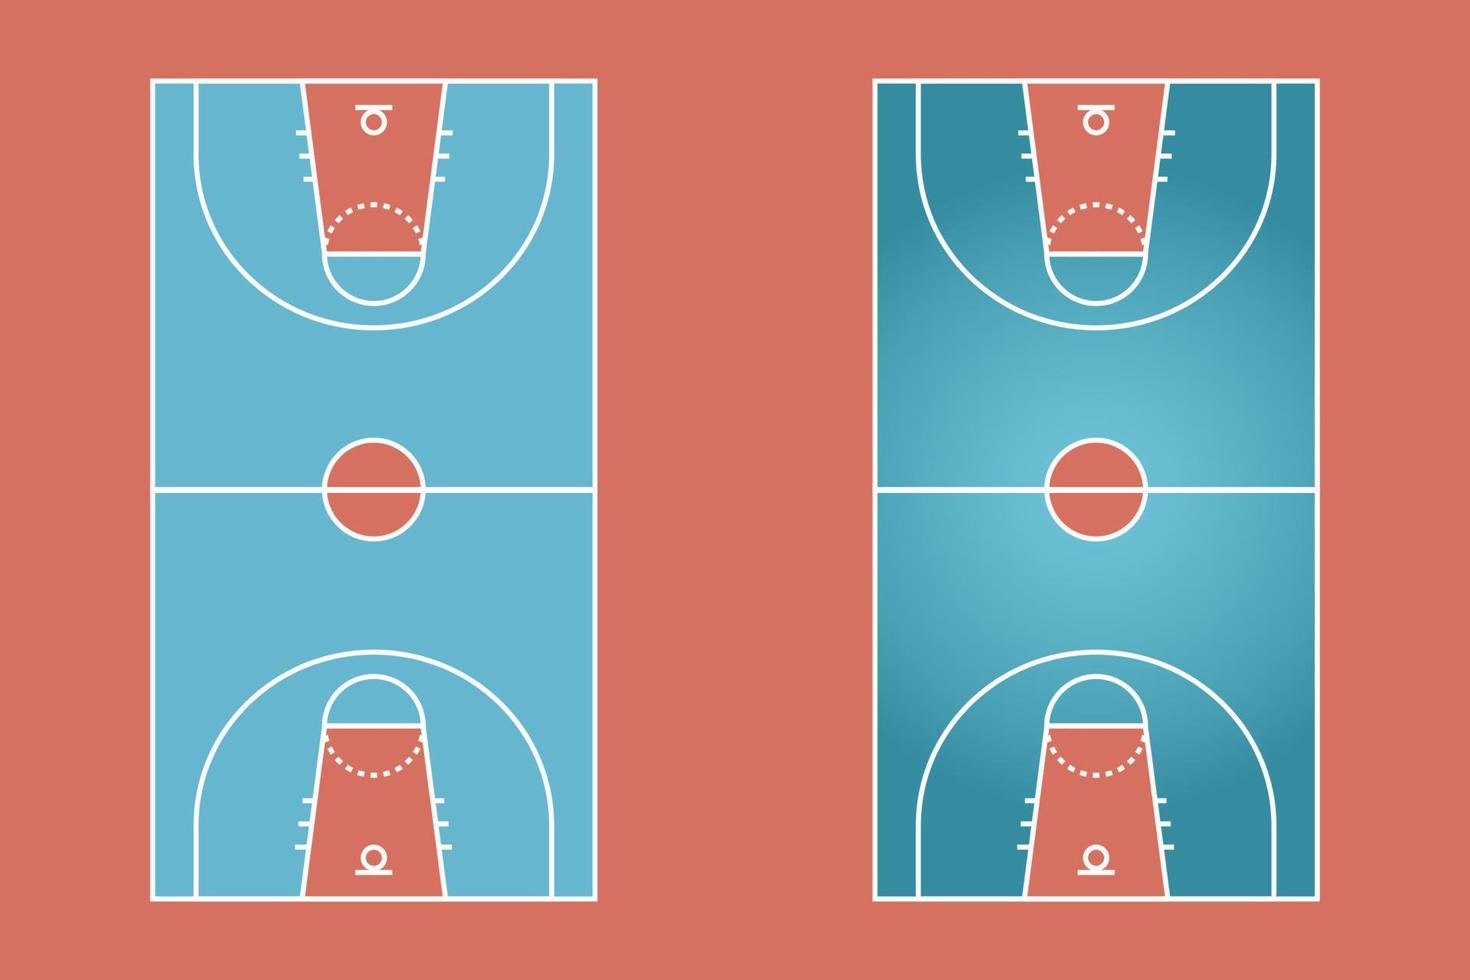 flaches design des basketballfeldes, grafische illustration des sportfeldes, vektor des basketballplatzes und plan.